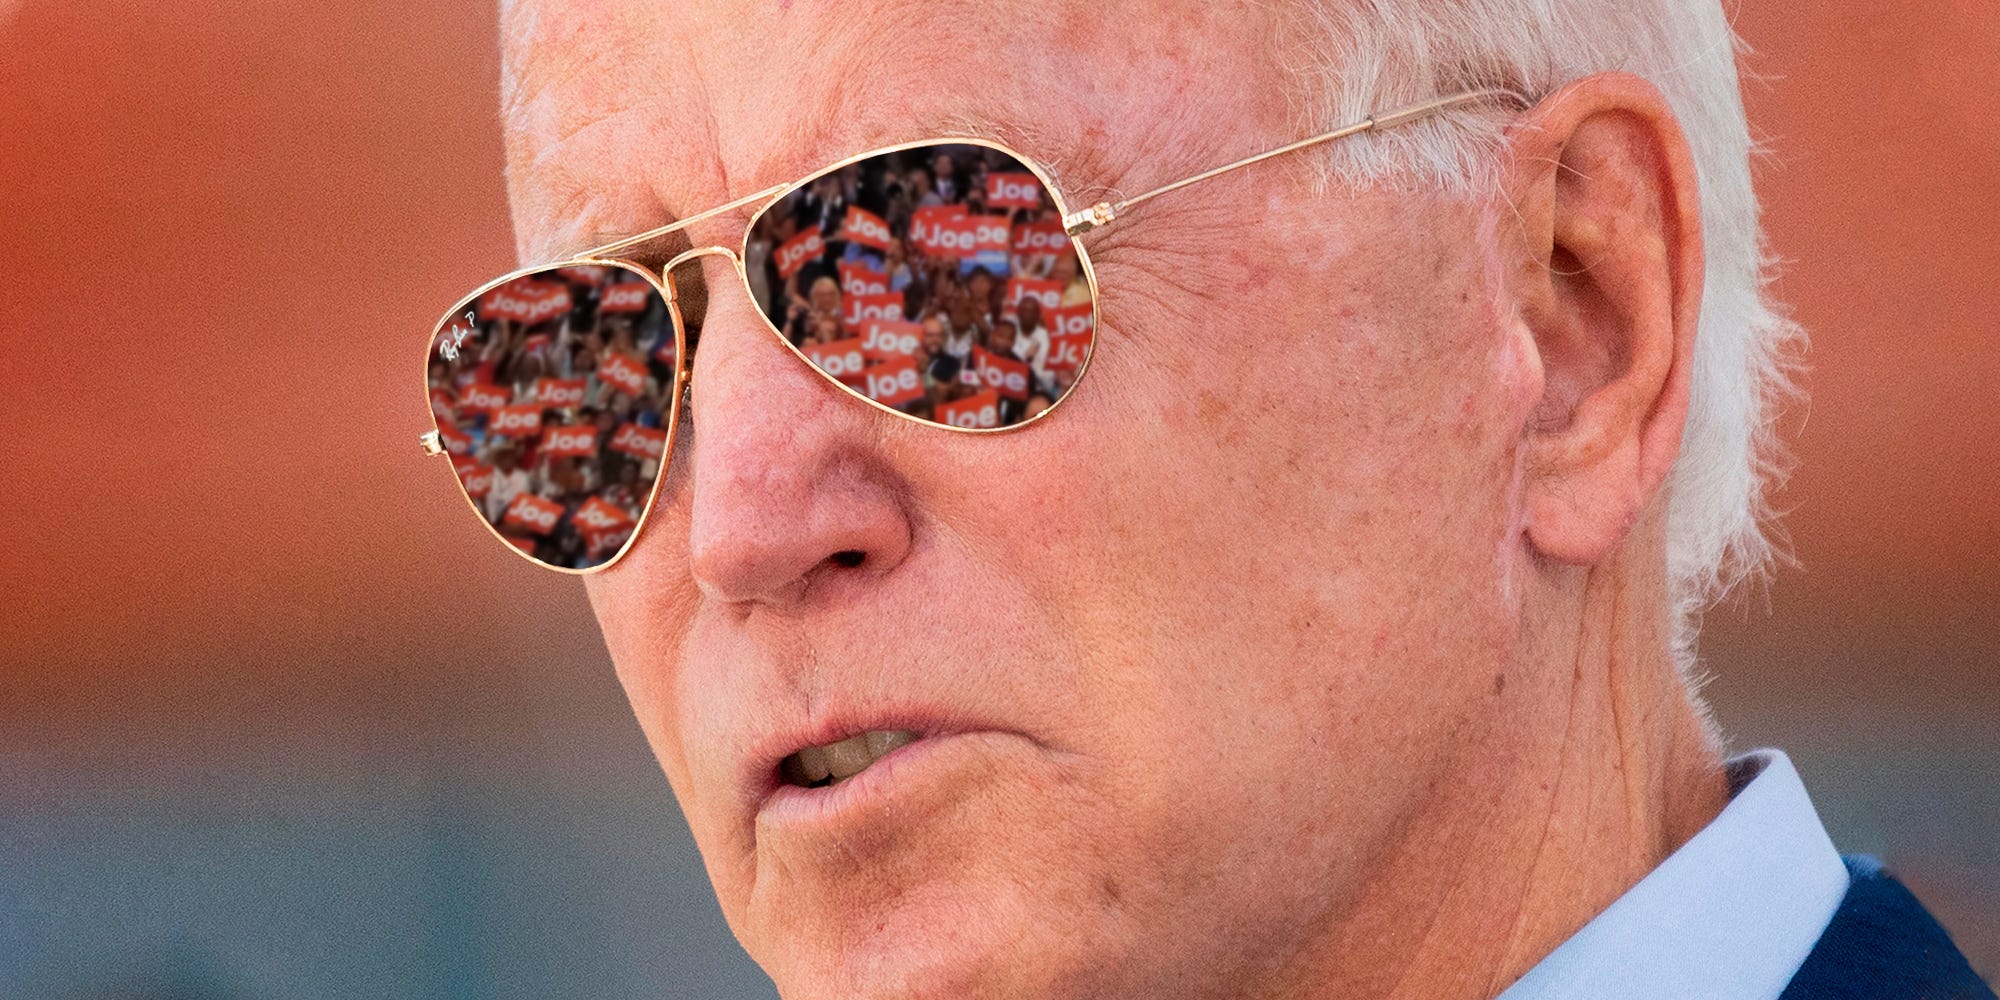 What Sunglasses Does Joe Biden Wear?